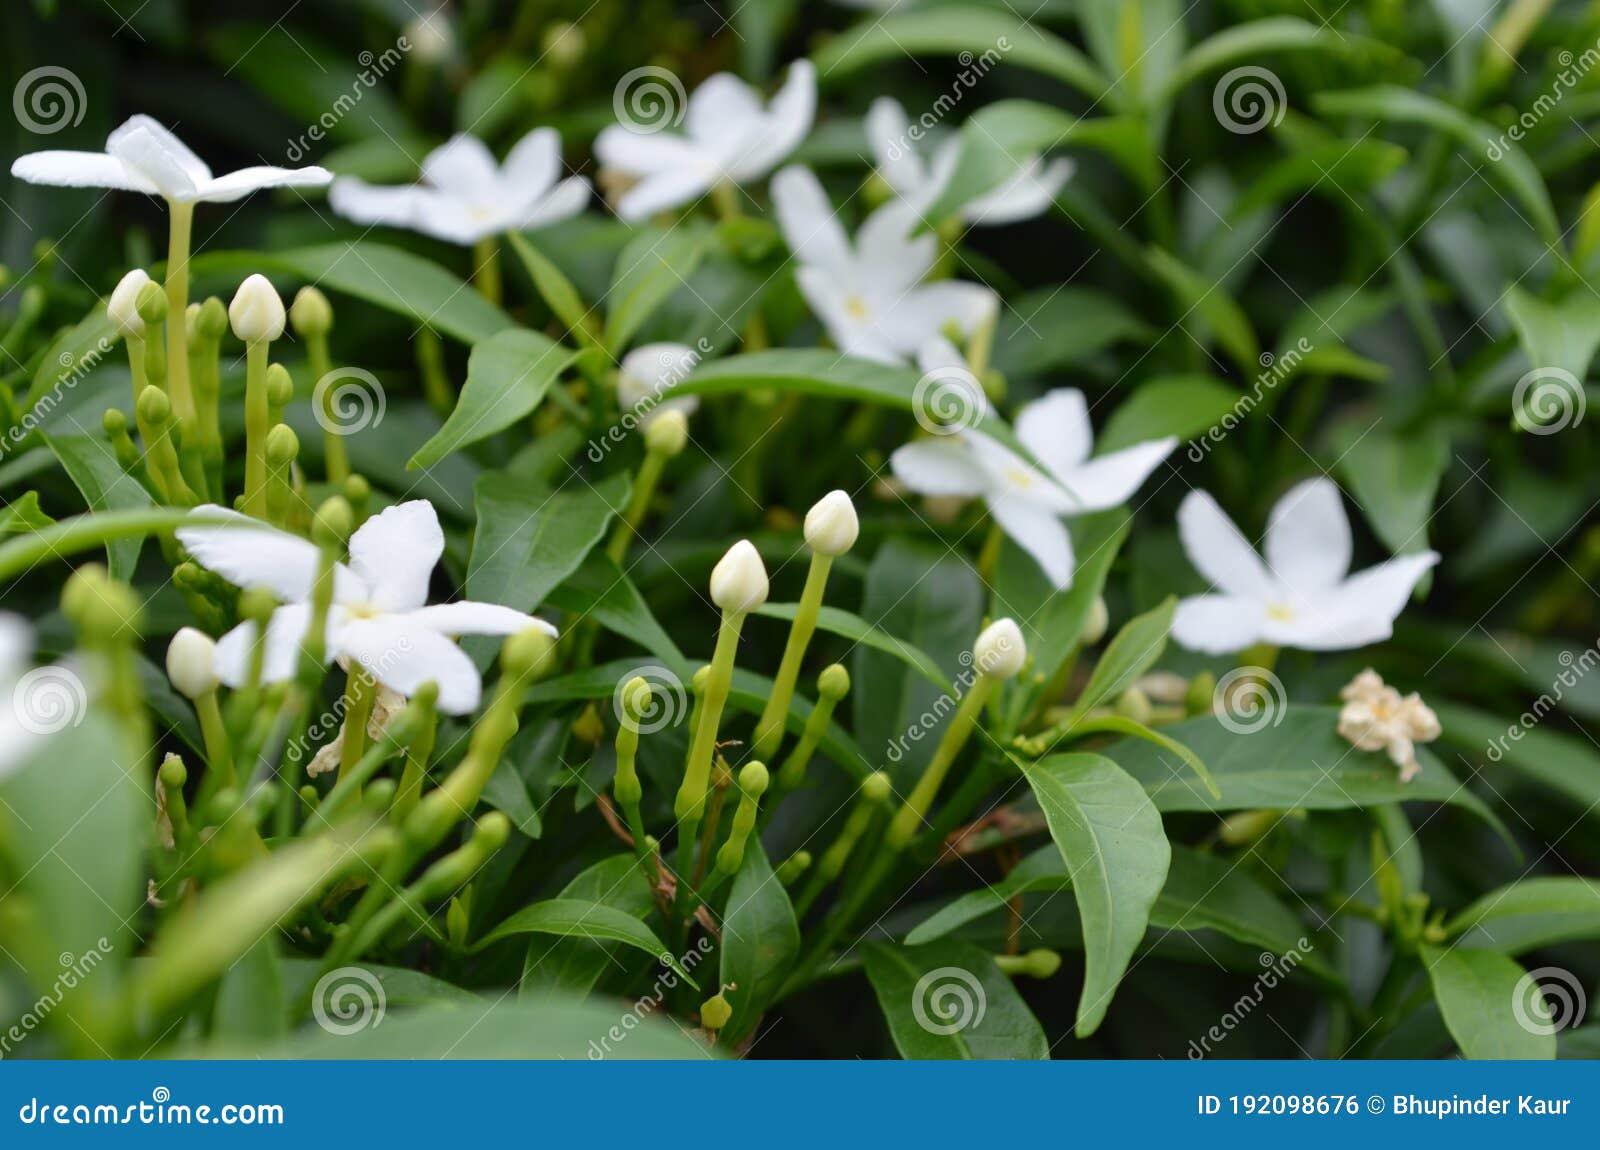 Flores De Jasmim De Cor Branca, Em Forma De Estrela, Num Arbusto De Jasmim  Num Jardim Foto de Stock - Imagem de arbusto, colorido: 192098676